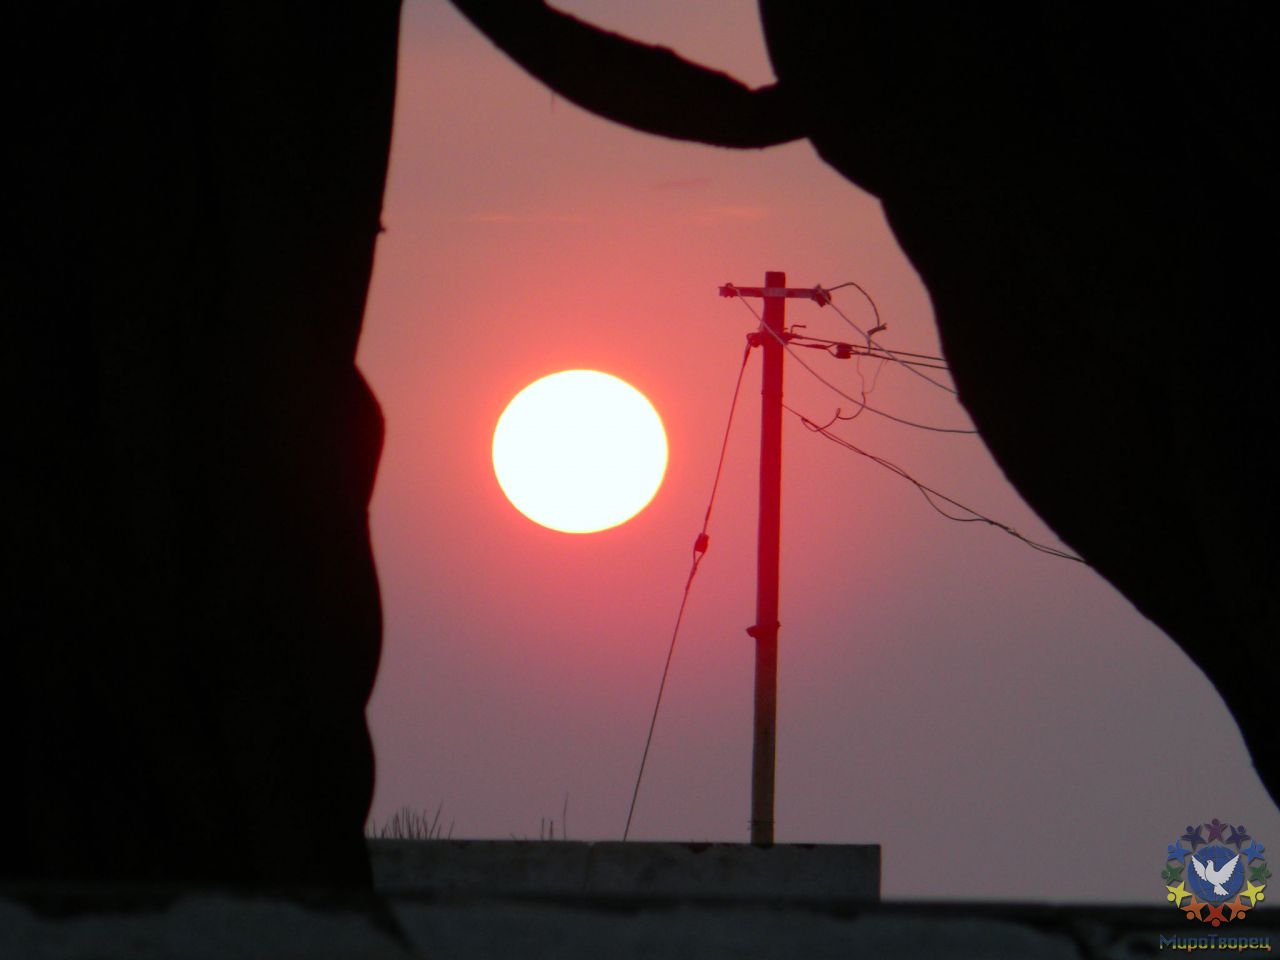 Закат чистый красивый в этот день как никогда - группа в Индии, ноябрь 2011, часть 5 (Объединение)